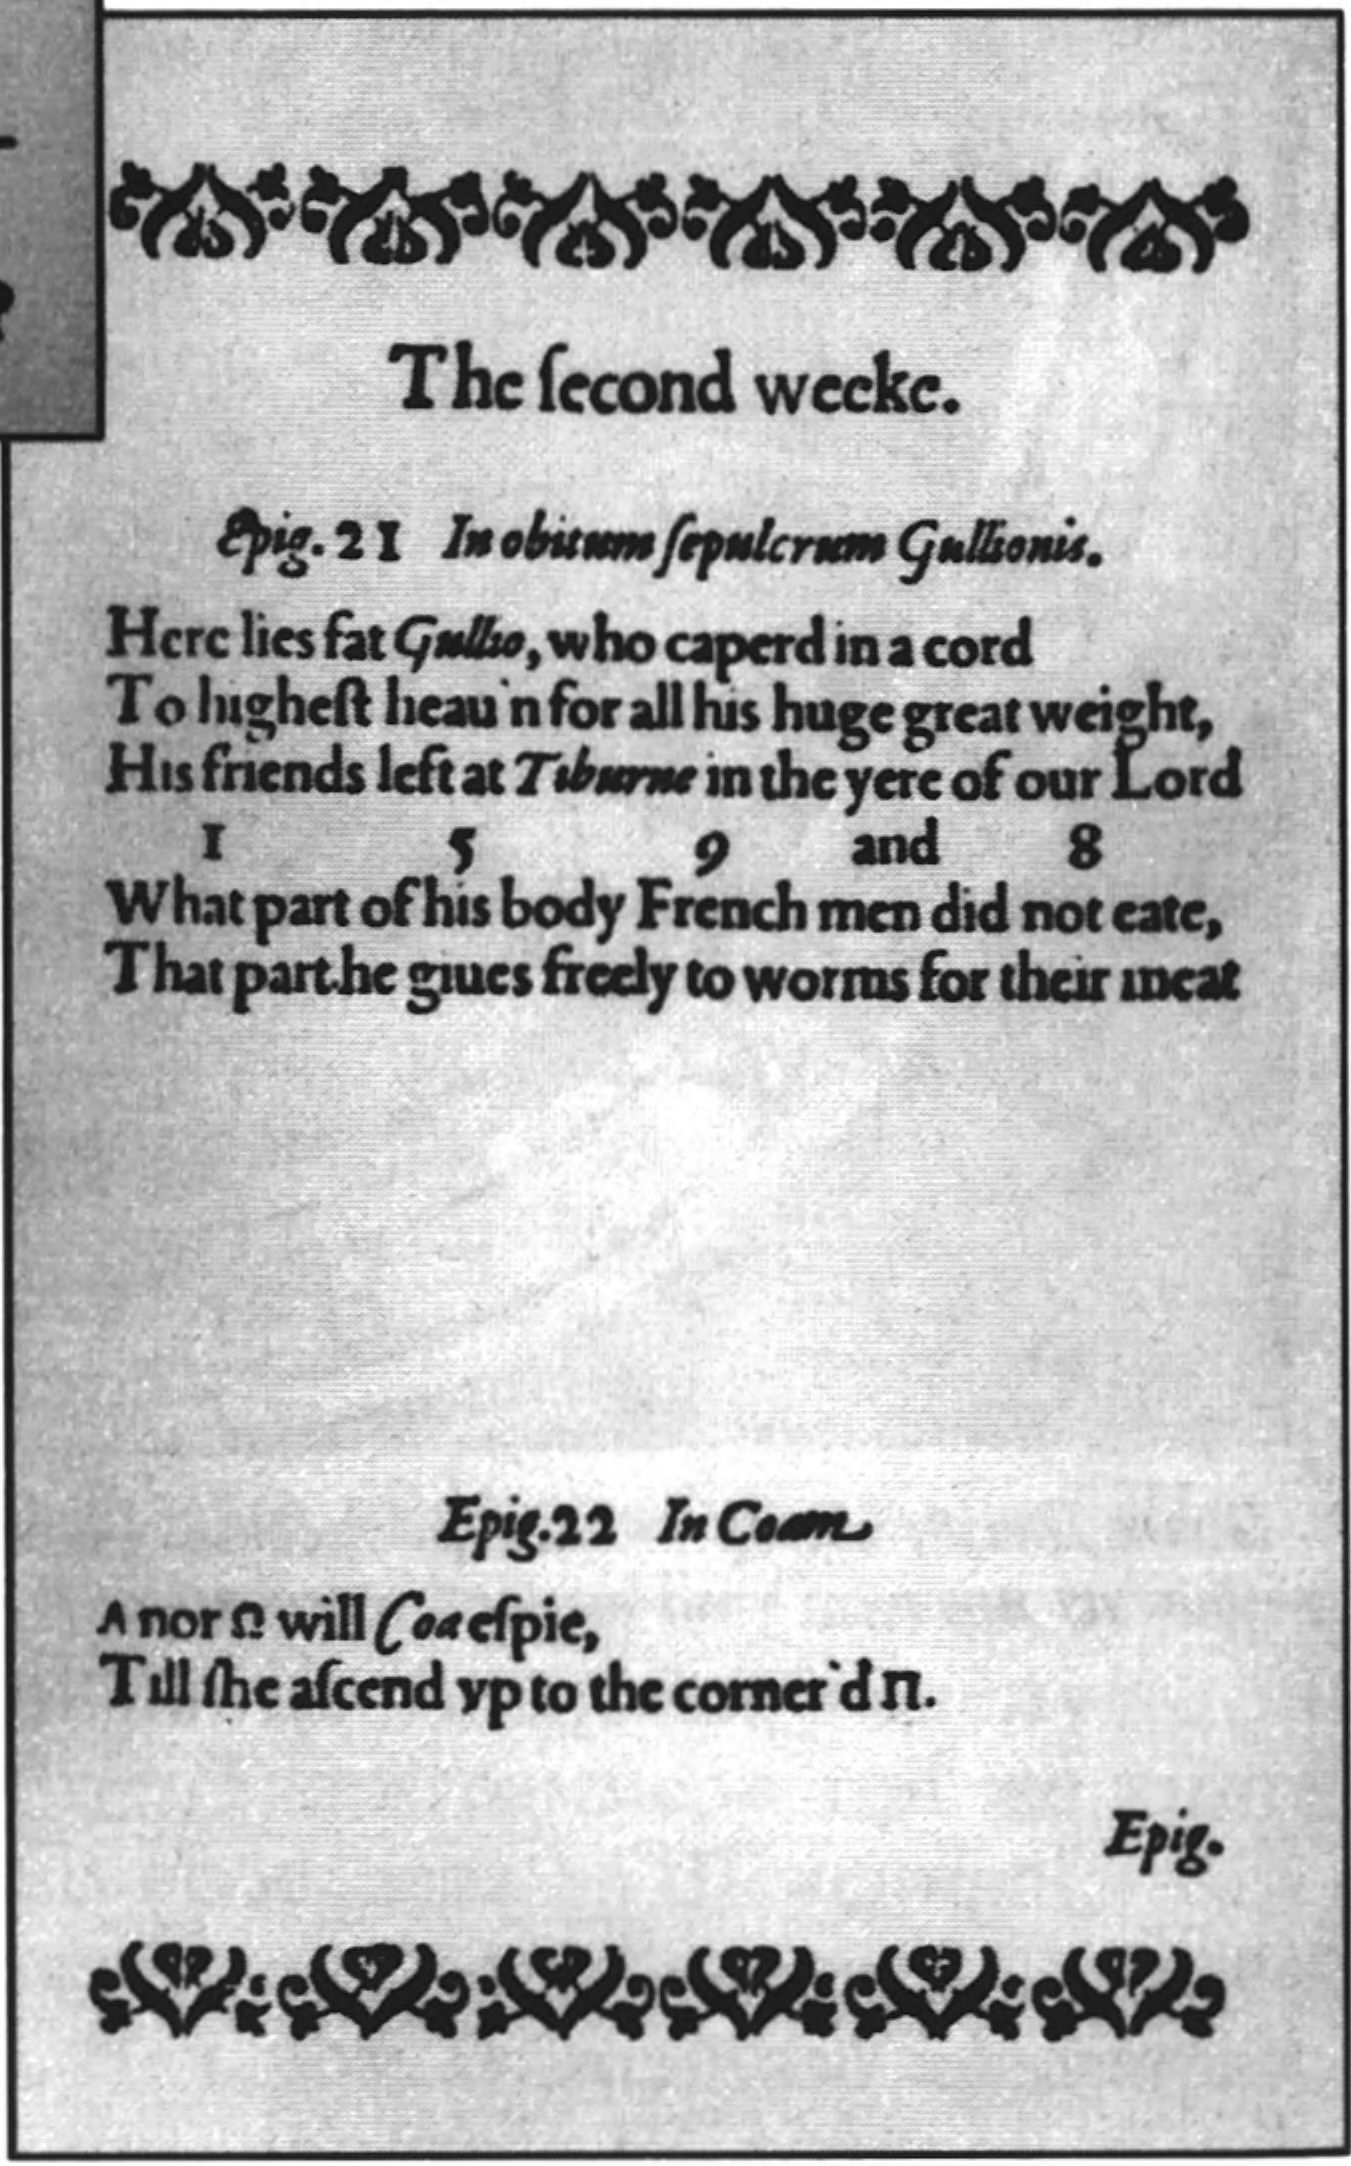 Страницы из «Эпиграмм» Уивера (1599 г.) с именами Рэтленда, Галлио, Шекспира, Марстона, Джонсона